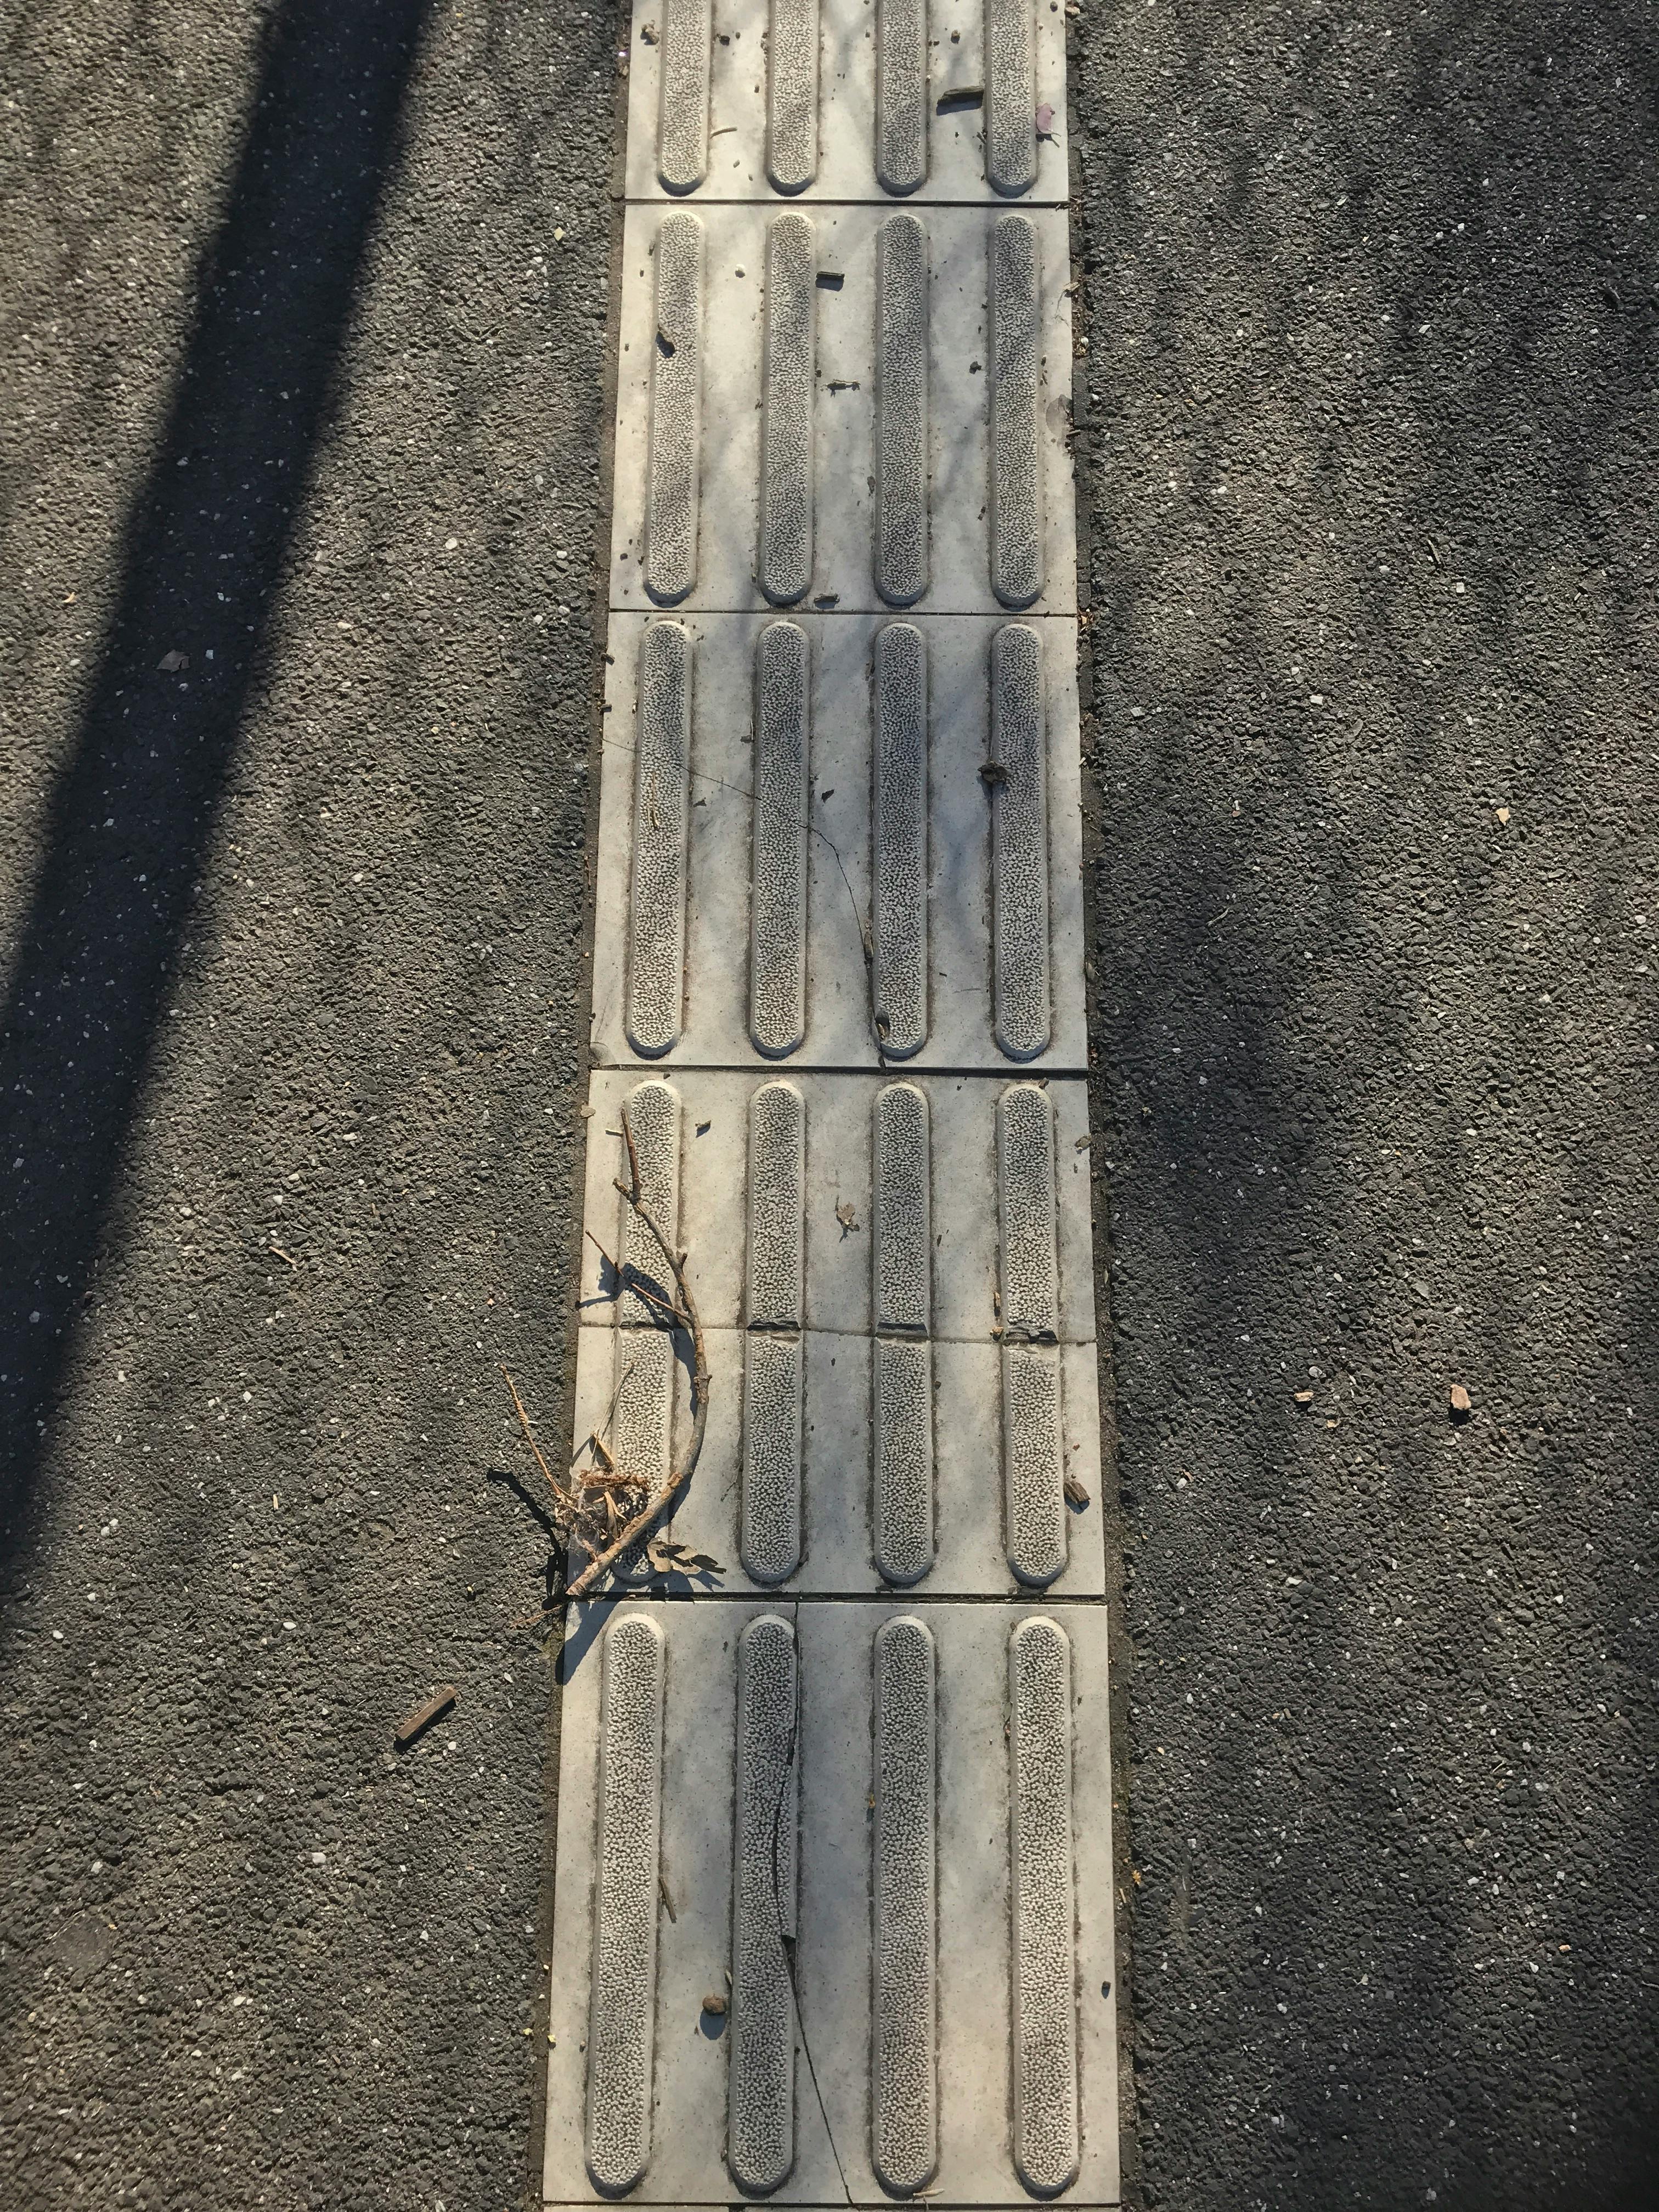 Free stock photo of mat, pavement, safety